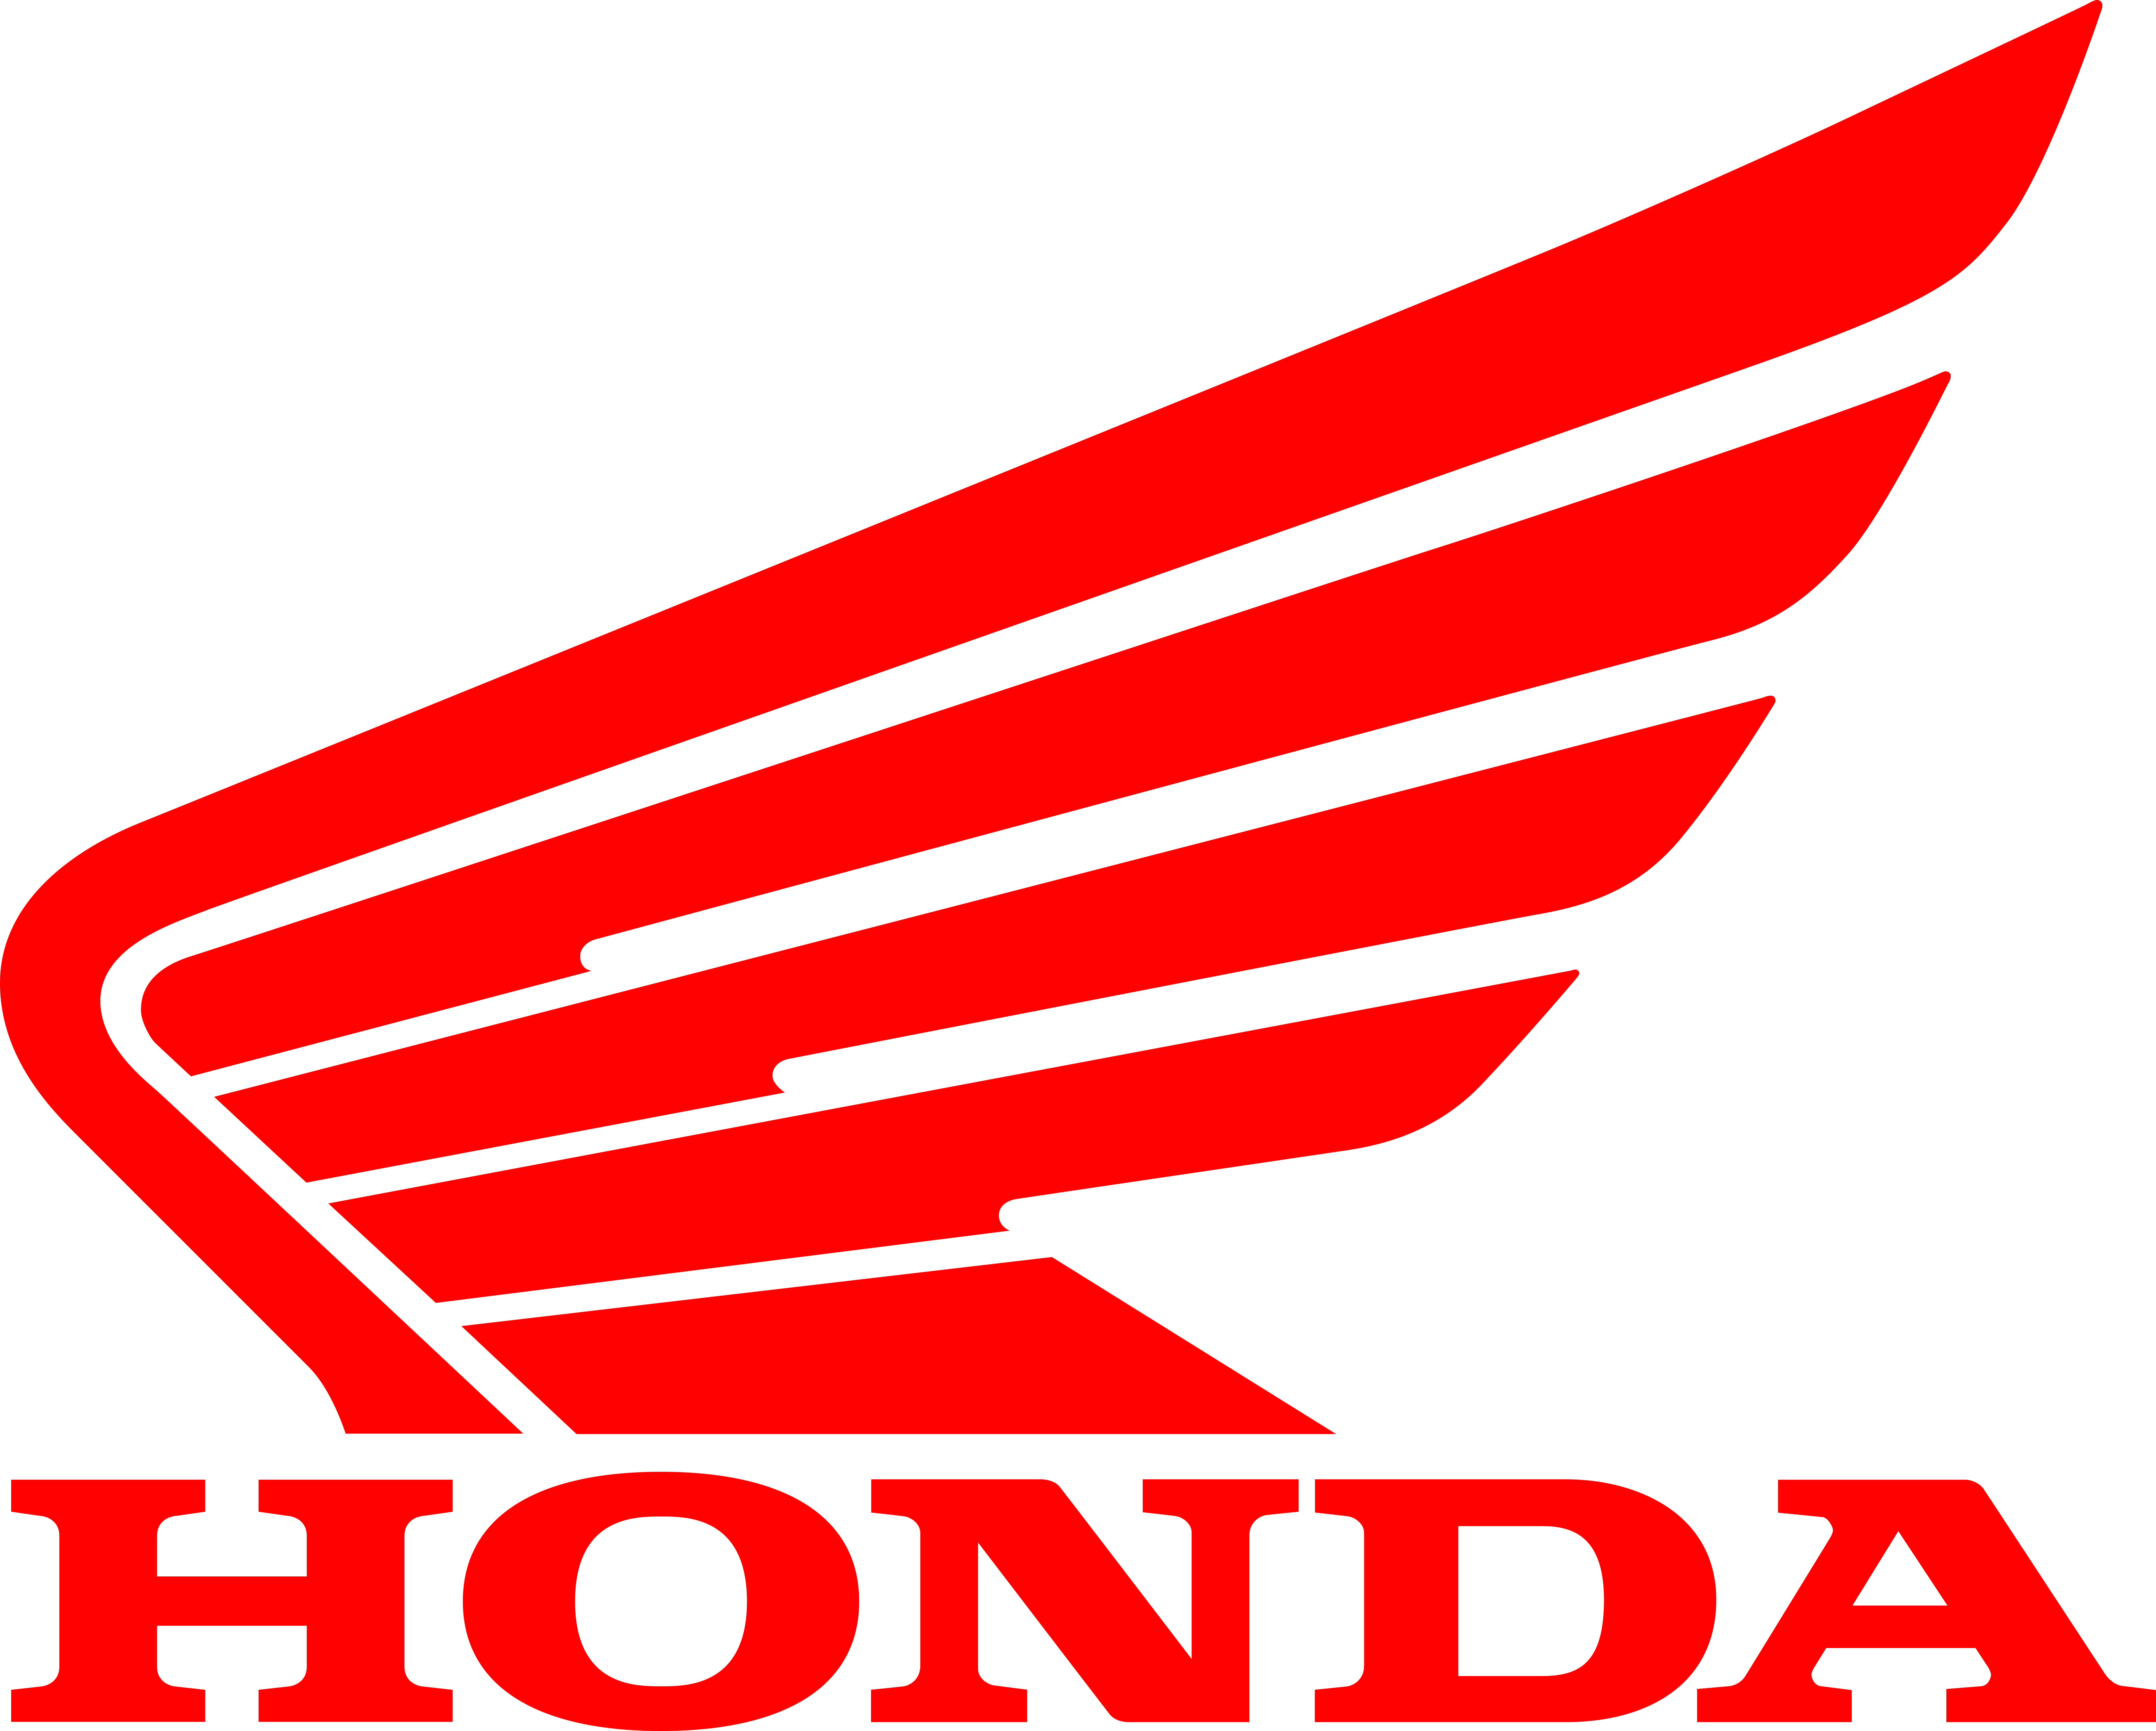 Лодочные моторы Honda logo